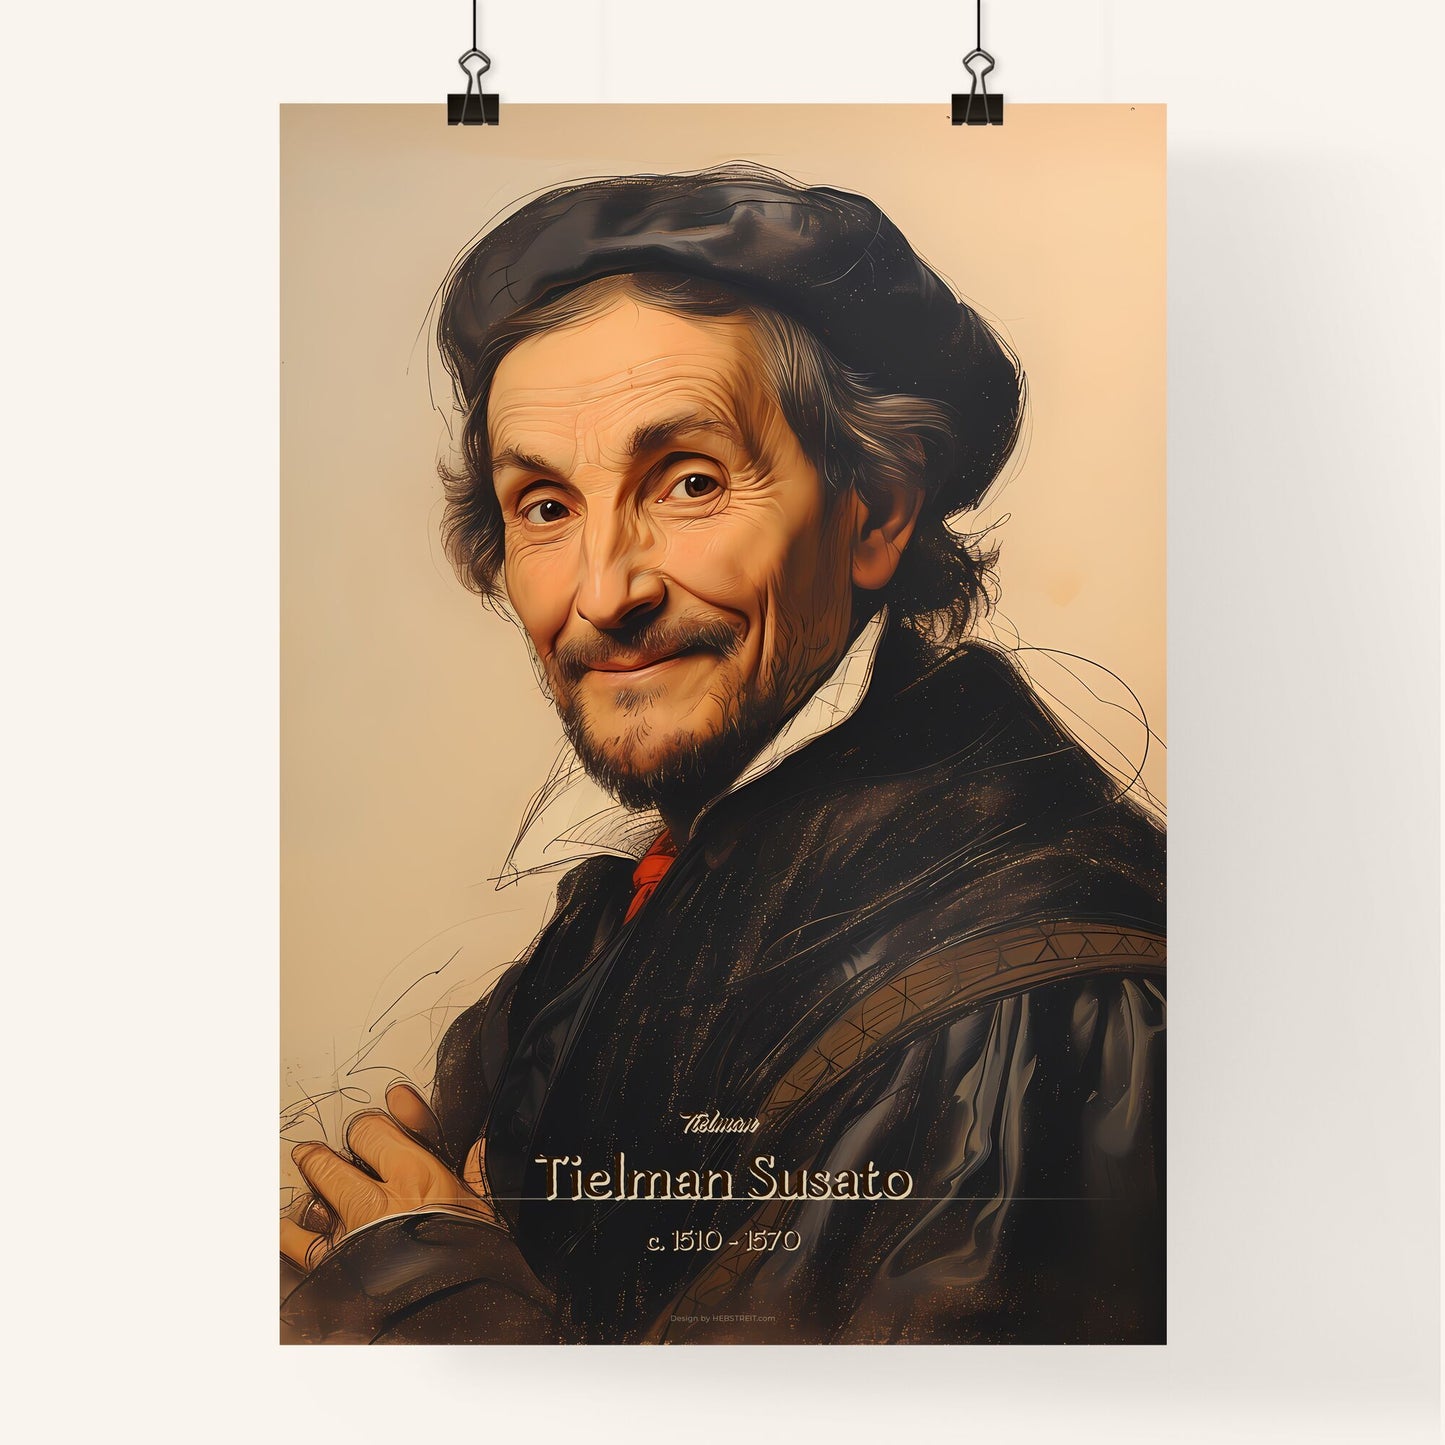 Tielman, Tielman Susato, c. 1510 - 1570, A Poster of a man wearing a hat Default Title